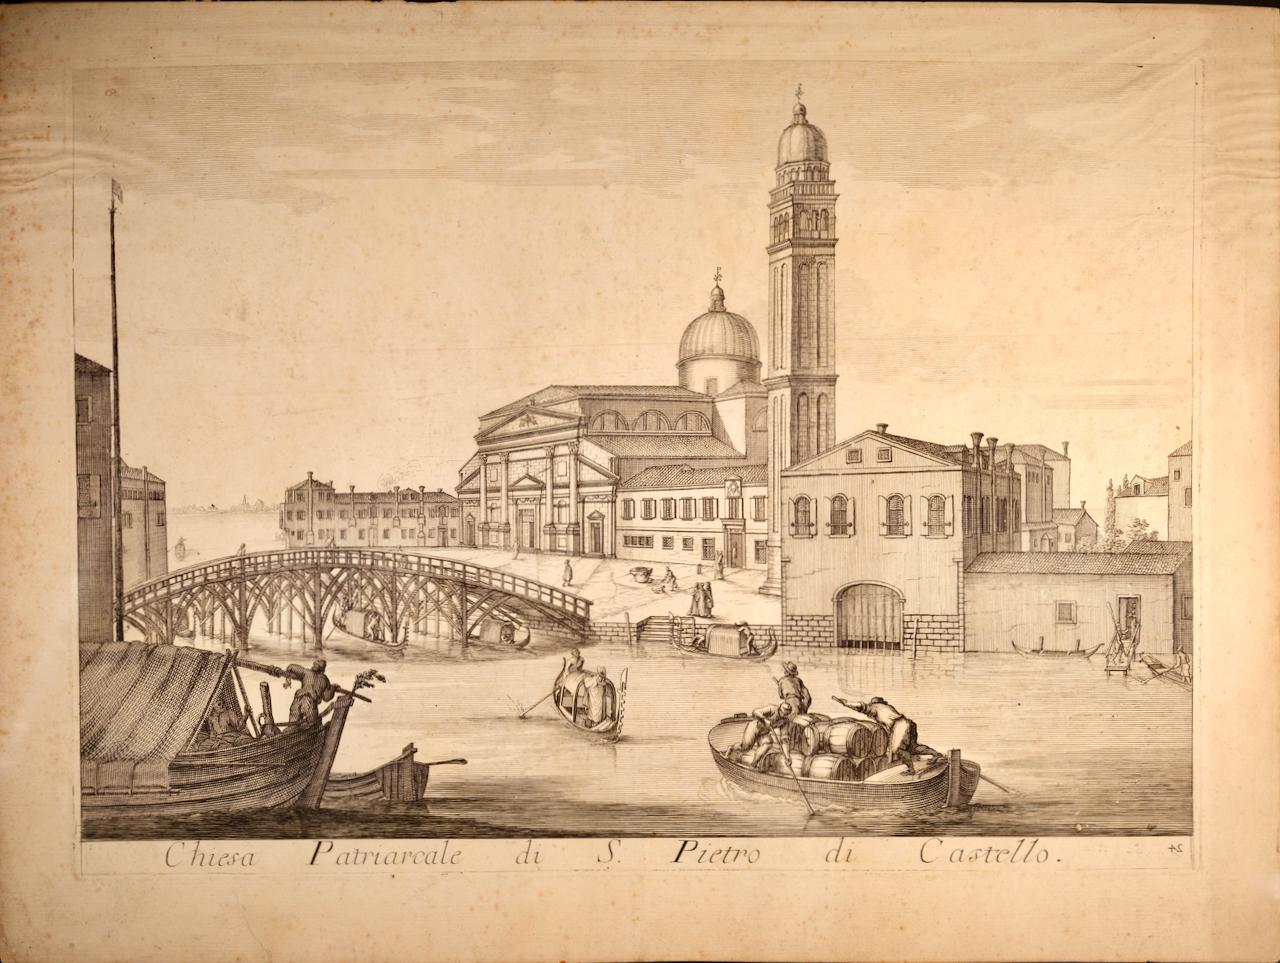 Domenico Lovisa Landscape Print - Venice: 18th Century View of the Basilica of S. Pietro di Castello by Lovisa